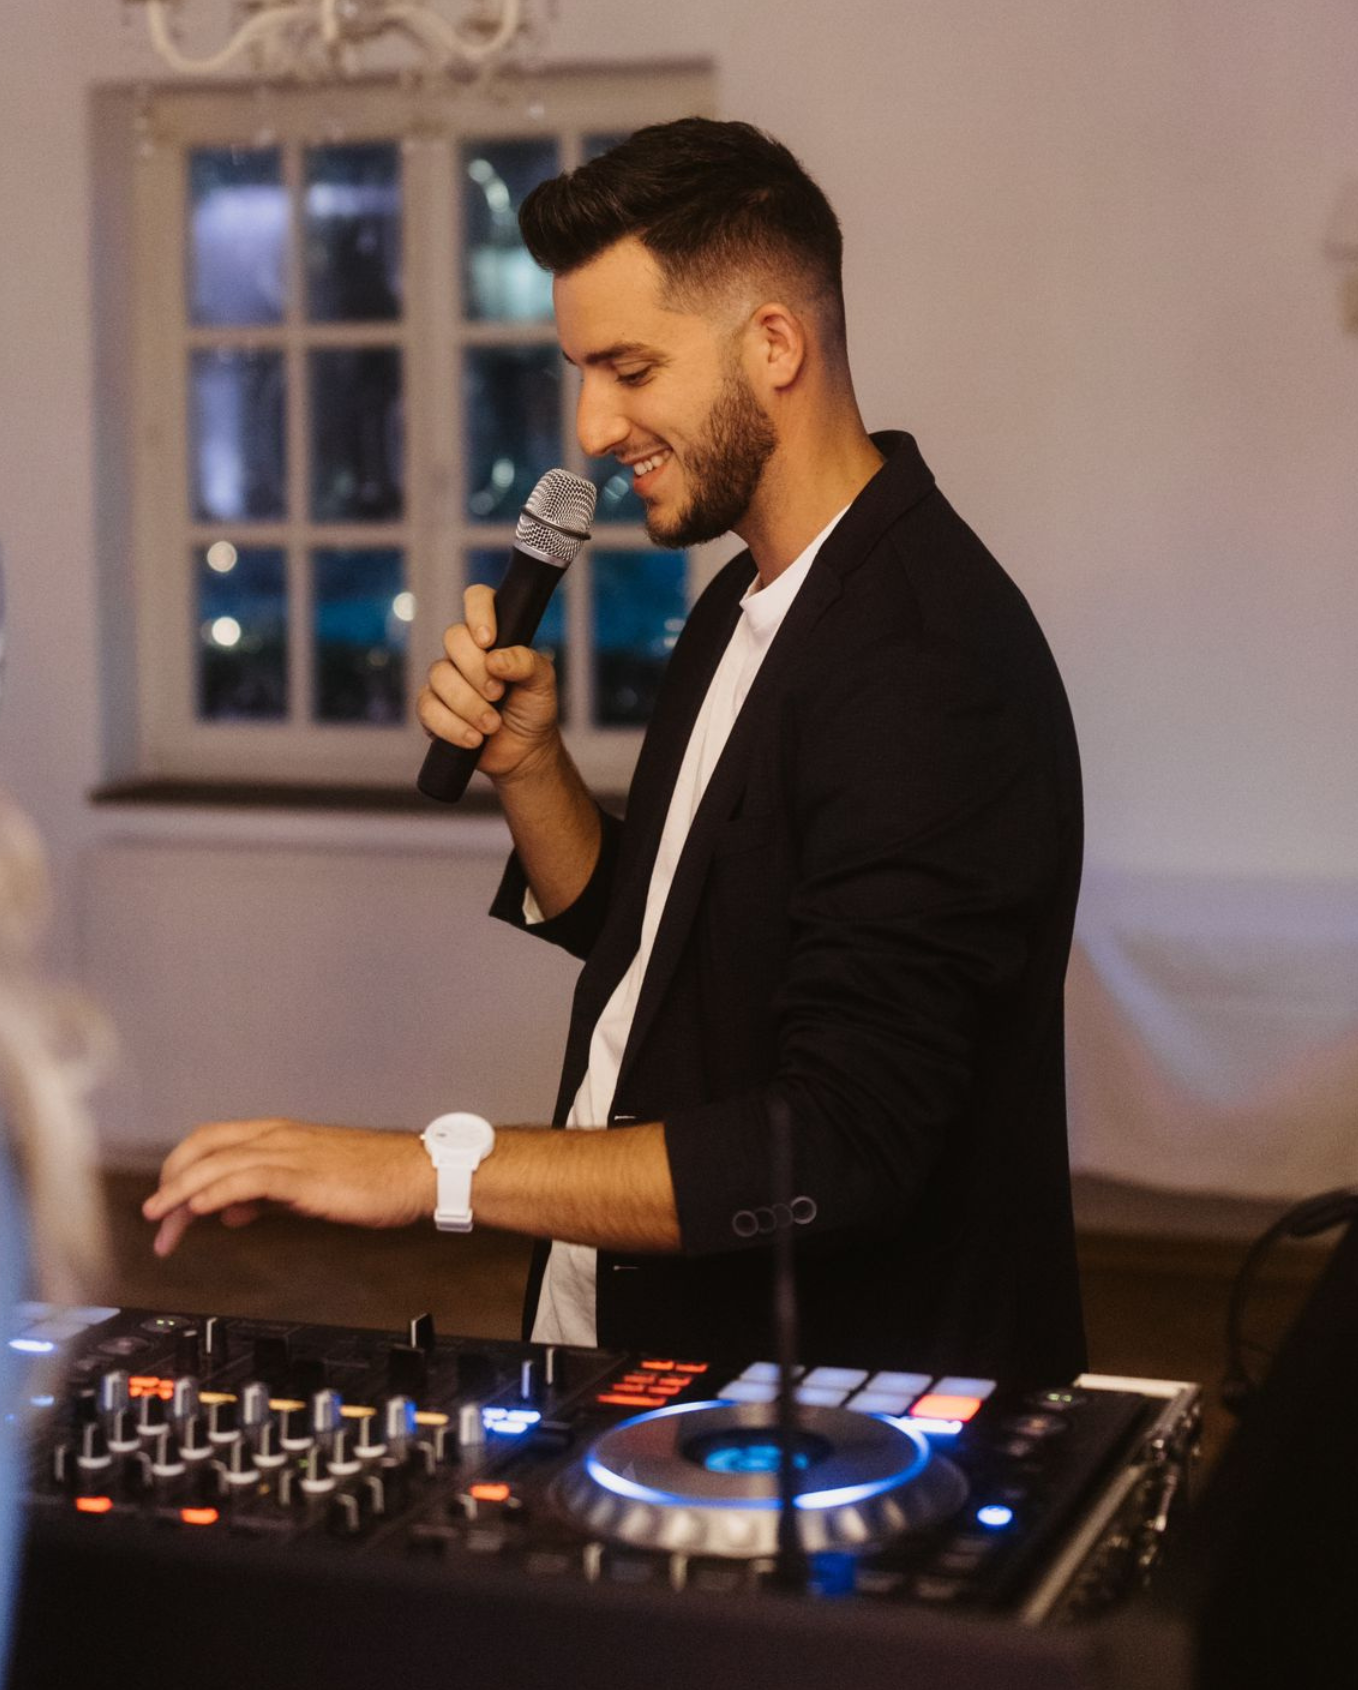 Hochzeits DJ mit Mikrofon auf Landgut Stüttem in Wipperfürth 